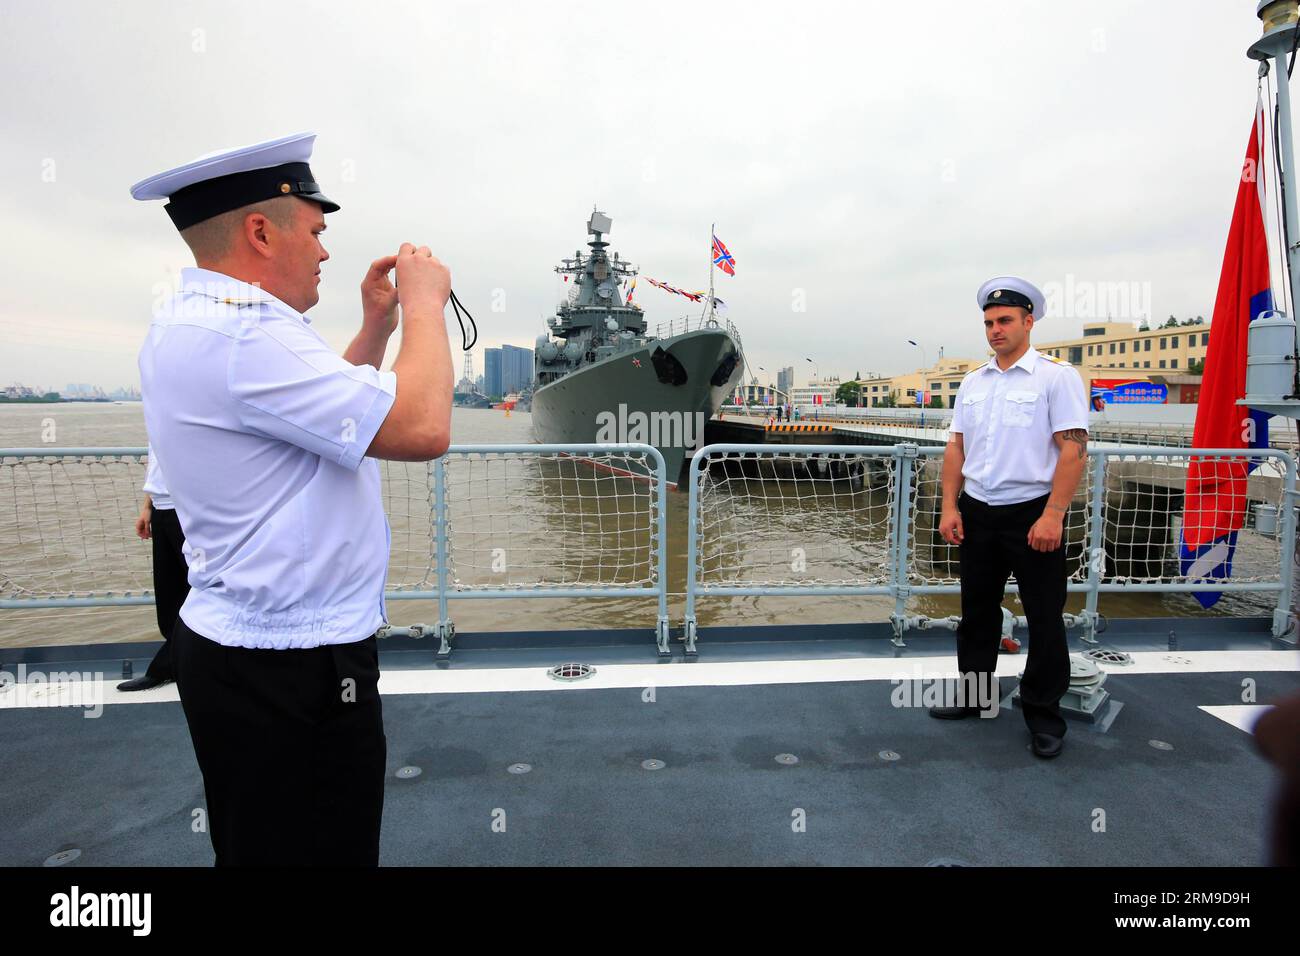 (140519) -- SHANGHAI, 19 mai 2014 (Xinhua) -- des soldats du croiseur russe de missiles guidés Varyag prennent des photos lors d'une visite du destroyer chinois Zhengzhou à Shanghai, dans l'est de la Chine, le 19 mai 2014. Les forces navales chinoises et russes ont tenu des activités d'échange lundi pour améliorer la communication mutuelle. Le forage conjoint Sea-2014 aura lieu dans la partie nord de la mer de Chine orientale du 20 au 26 mai. Il s agira du troisième exercice de ce type après des exercices conjoints au large des côtes de l extrême-Orient russe en juillet 2013 et de la mer jaune en avril 2012. (Xinhua/Zha Chunming) (zc) JOINT NAVY-SHANGHAI Banque D'Images